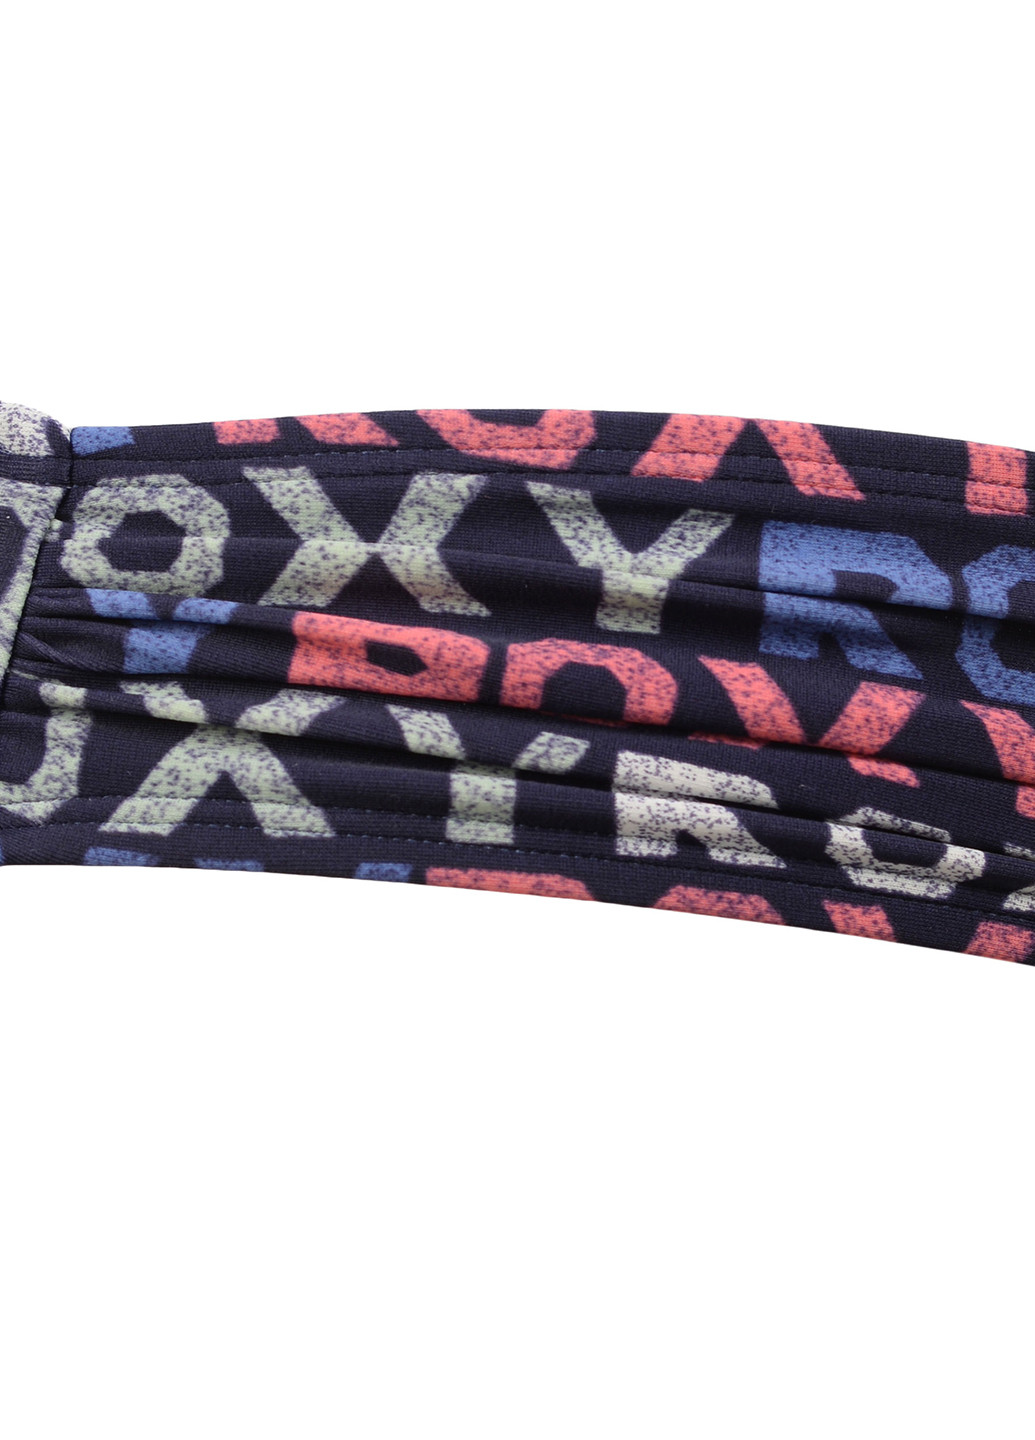 Купальні труси Roxy бікіні написи темно-сині пляжні поліамід